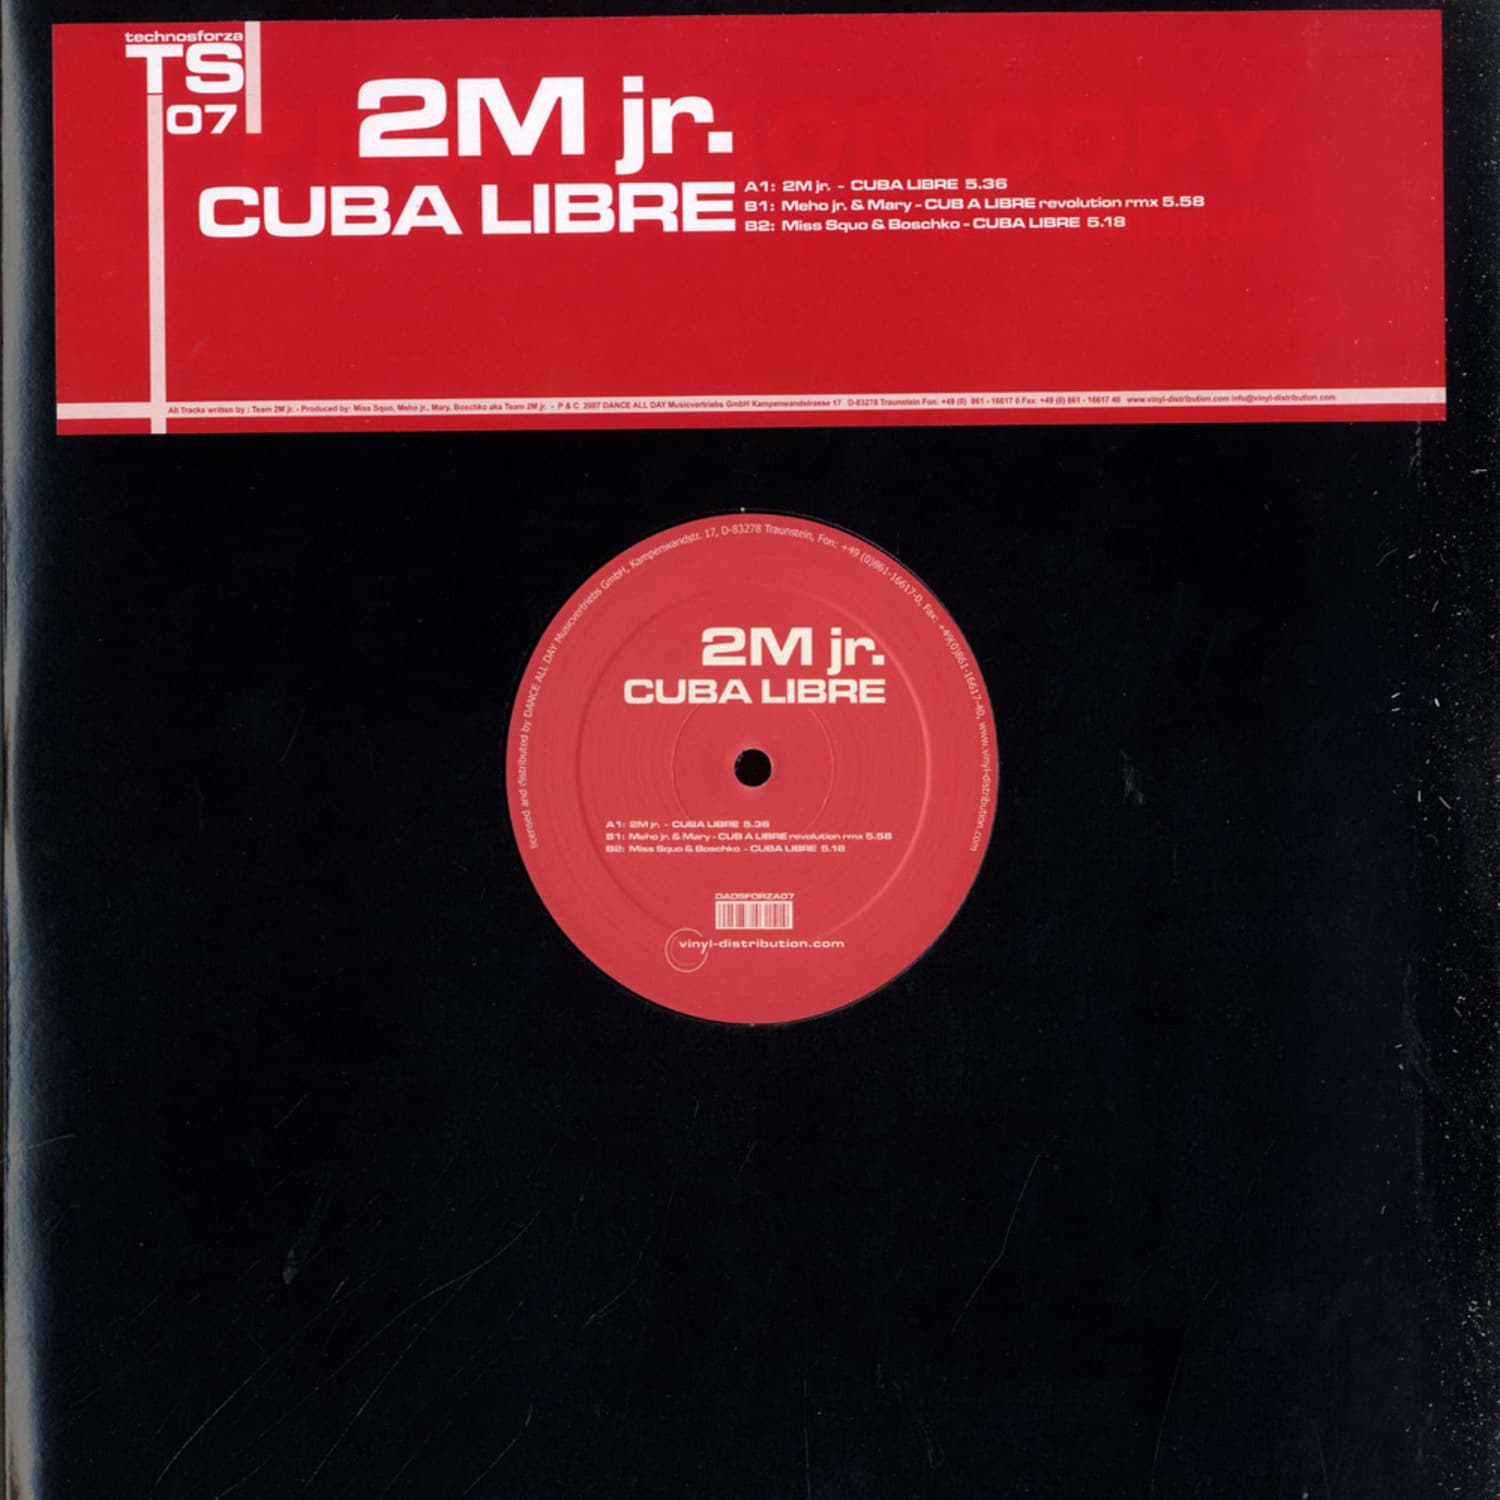 2M jr. - CUBA LIBRE